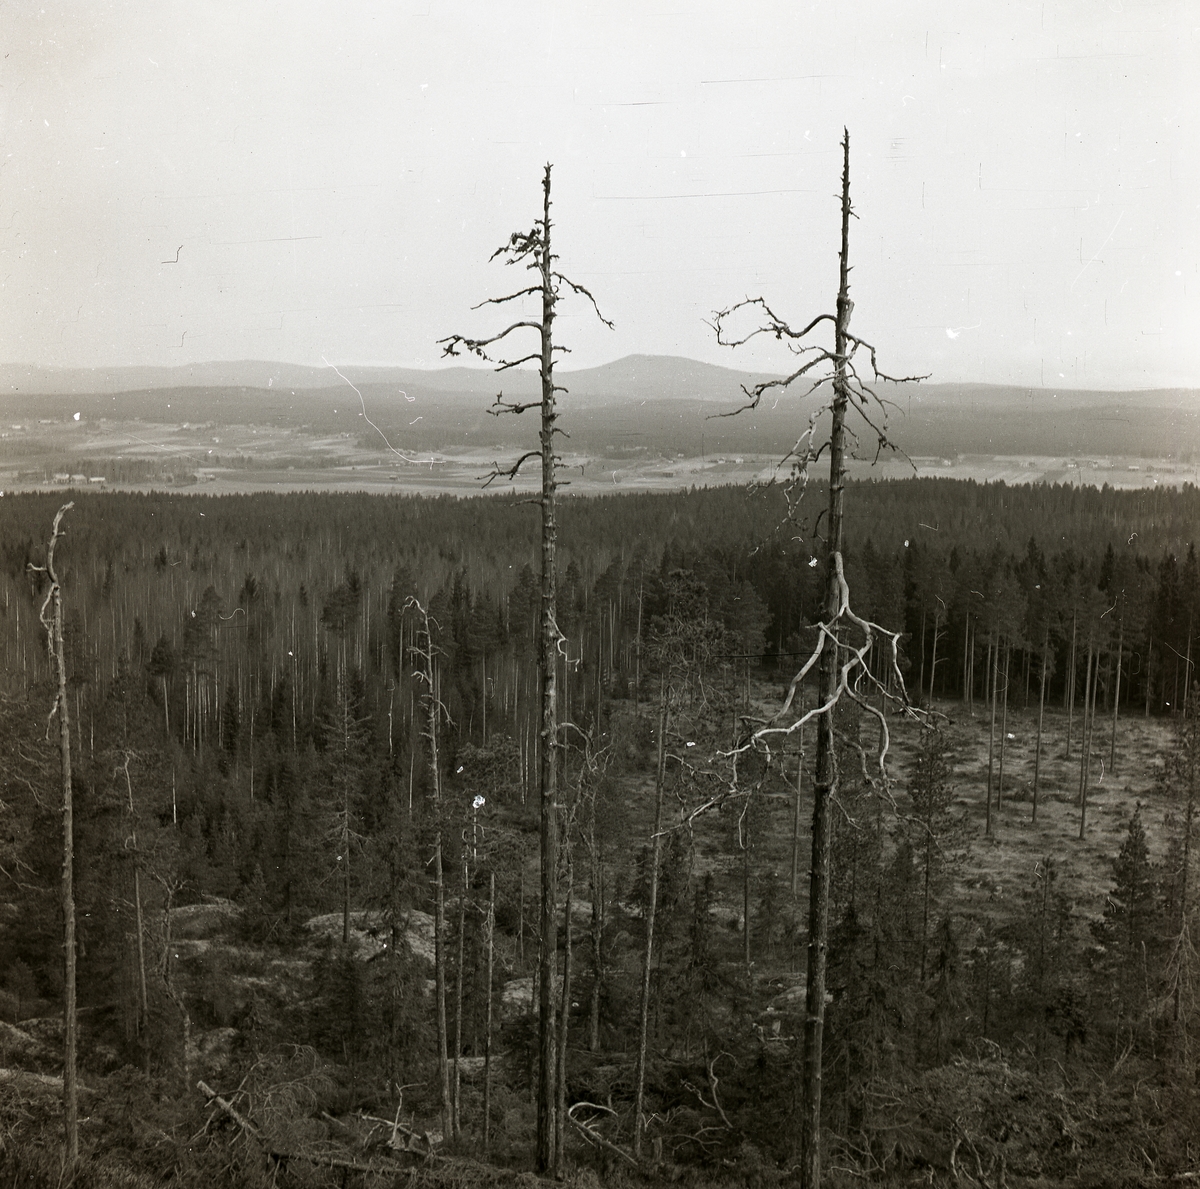 Två döda och barklösa träd, så kallade torrakar, på Skogsberget den 14 april 1952.